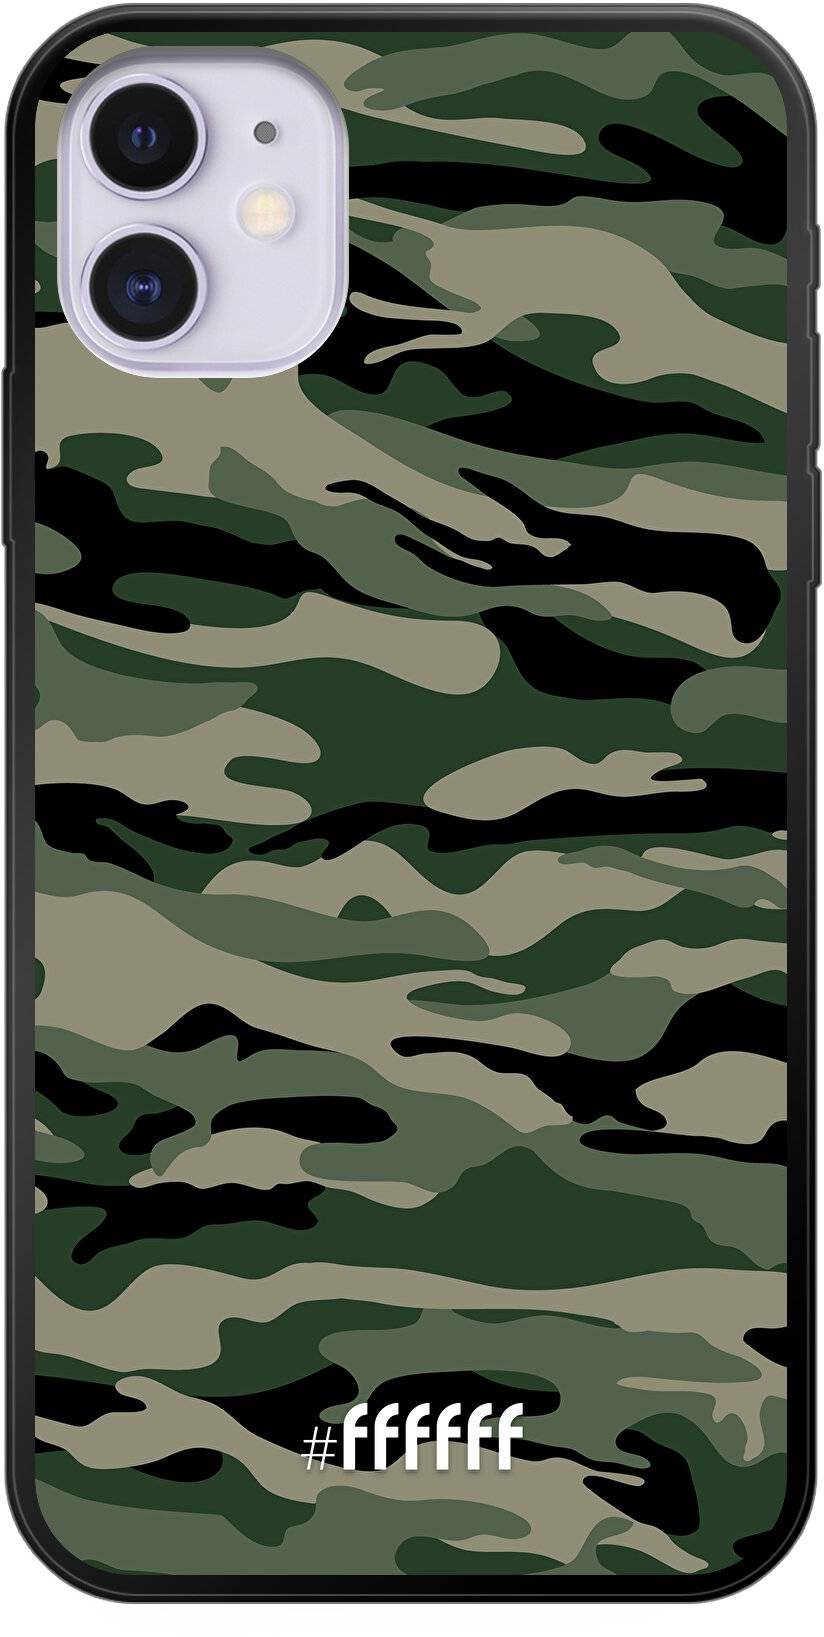 Woodland Camouflage iPhone 11